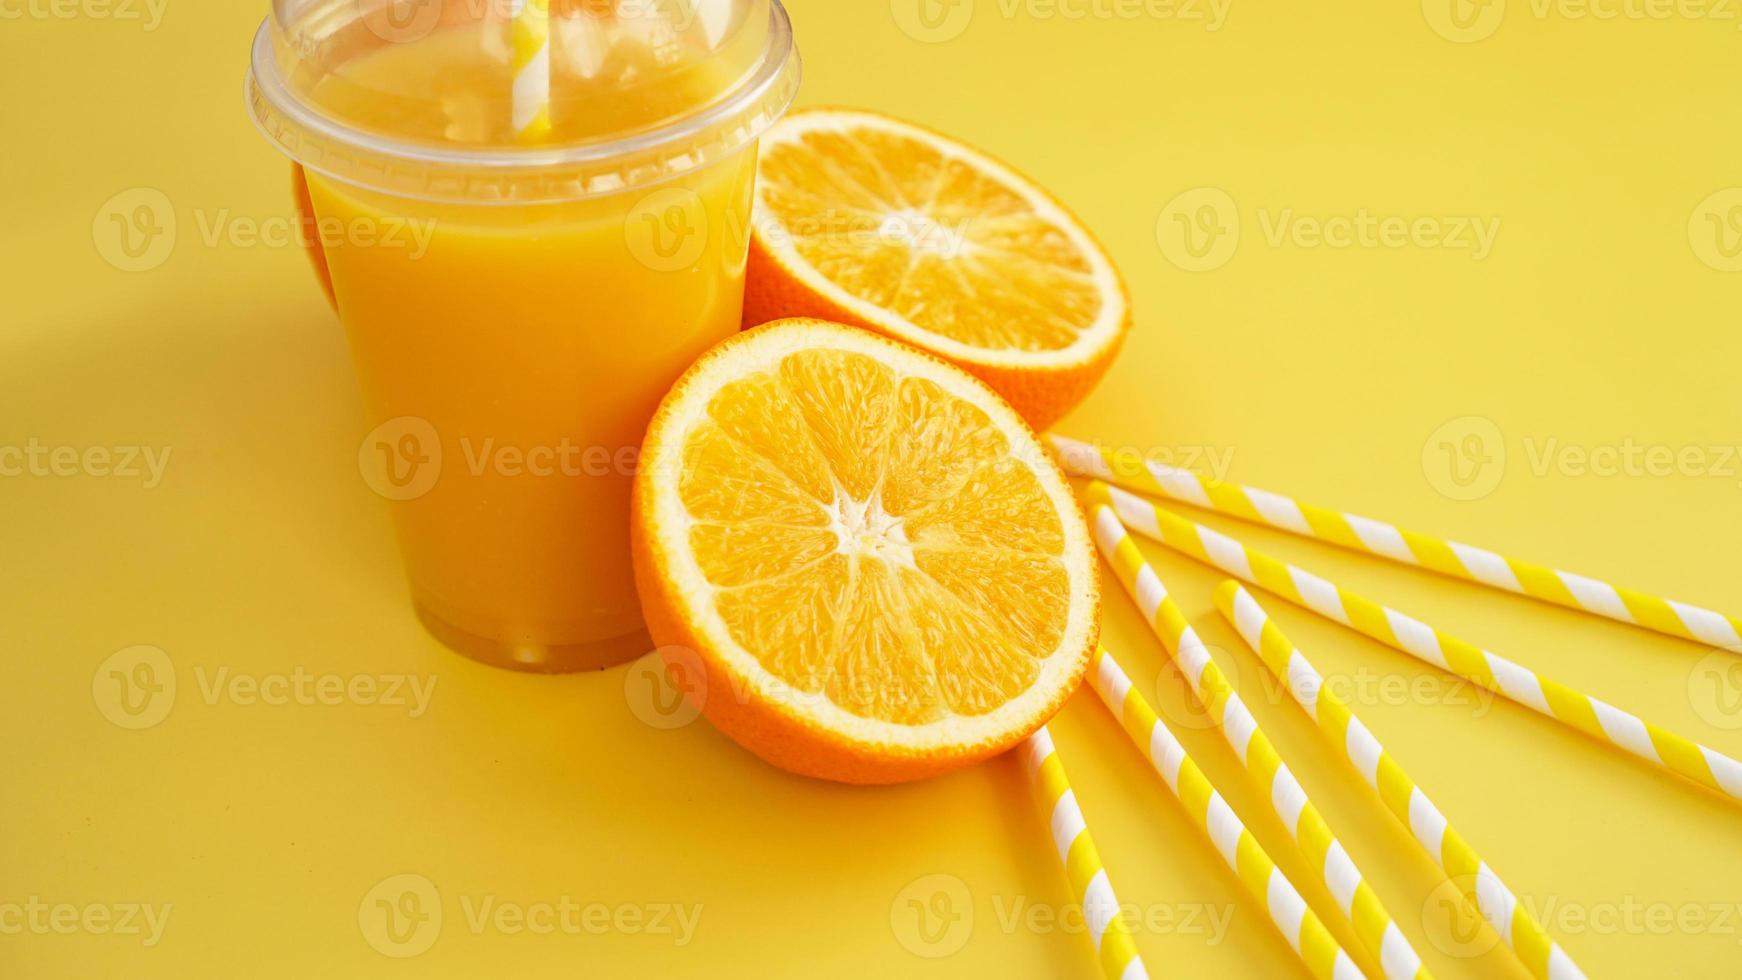 Orangensaft in Fast Food geschlossene Tasse mit Tube auf gelbem Hintergrund foto